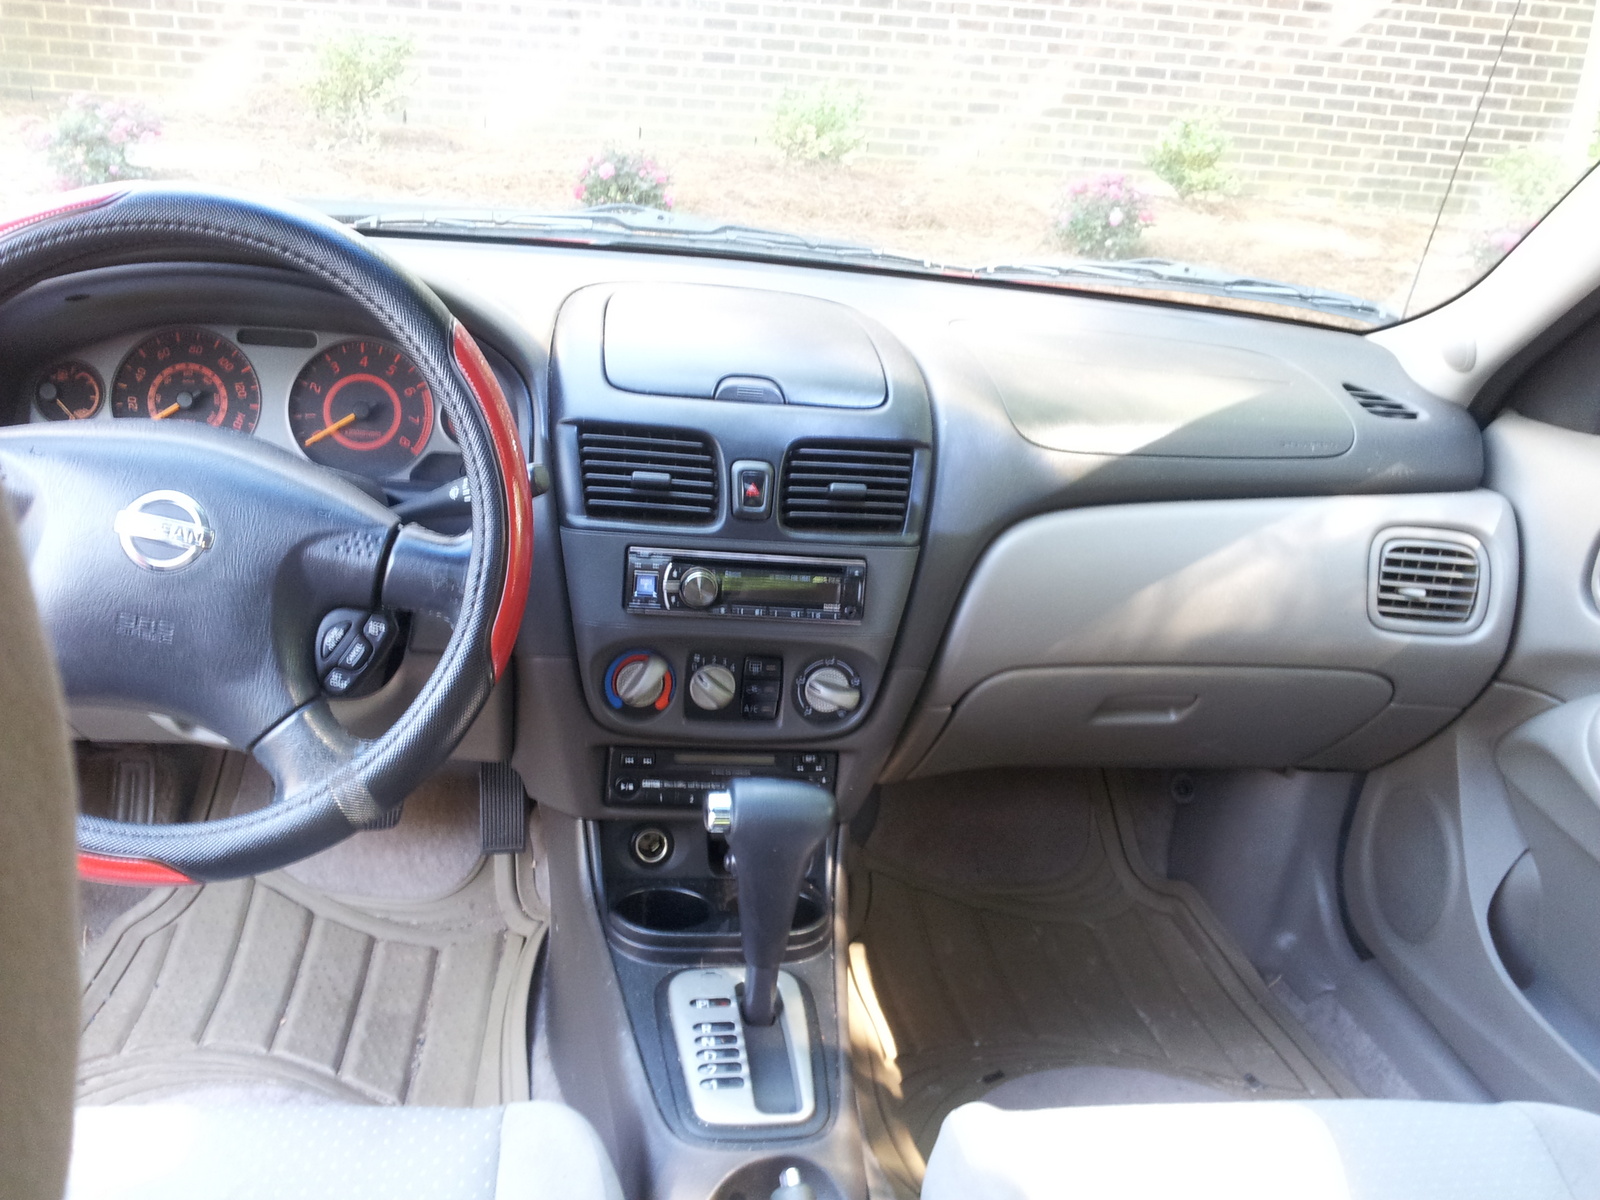 2002 Nissan sentra interior #7